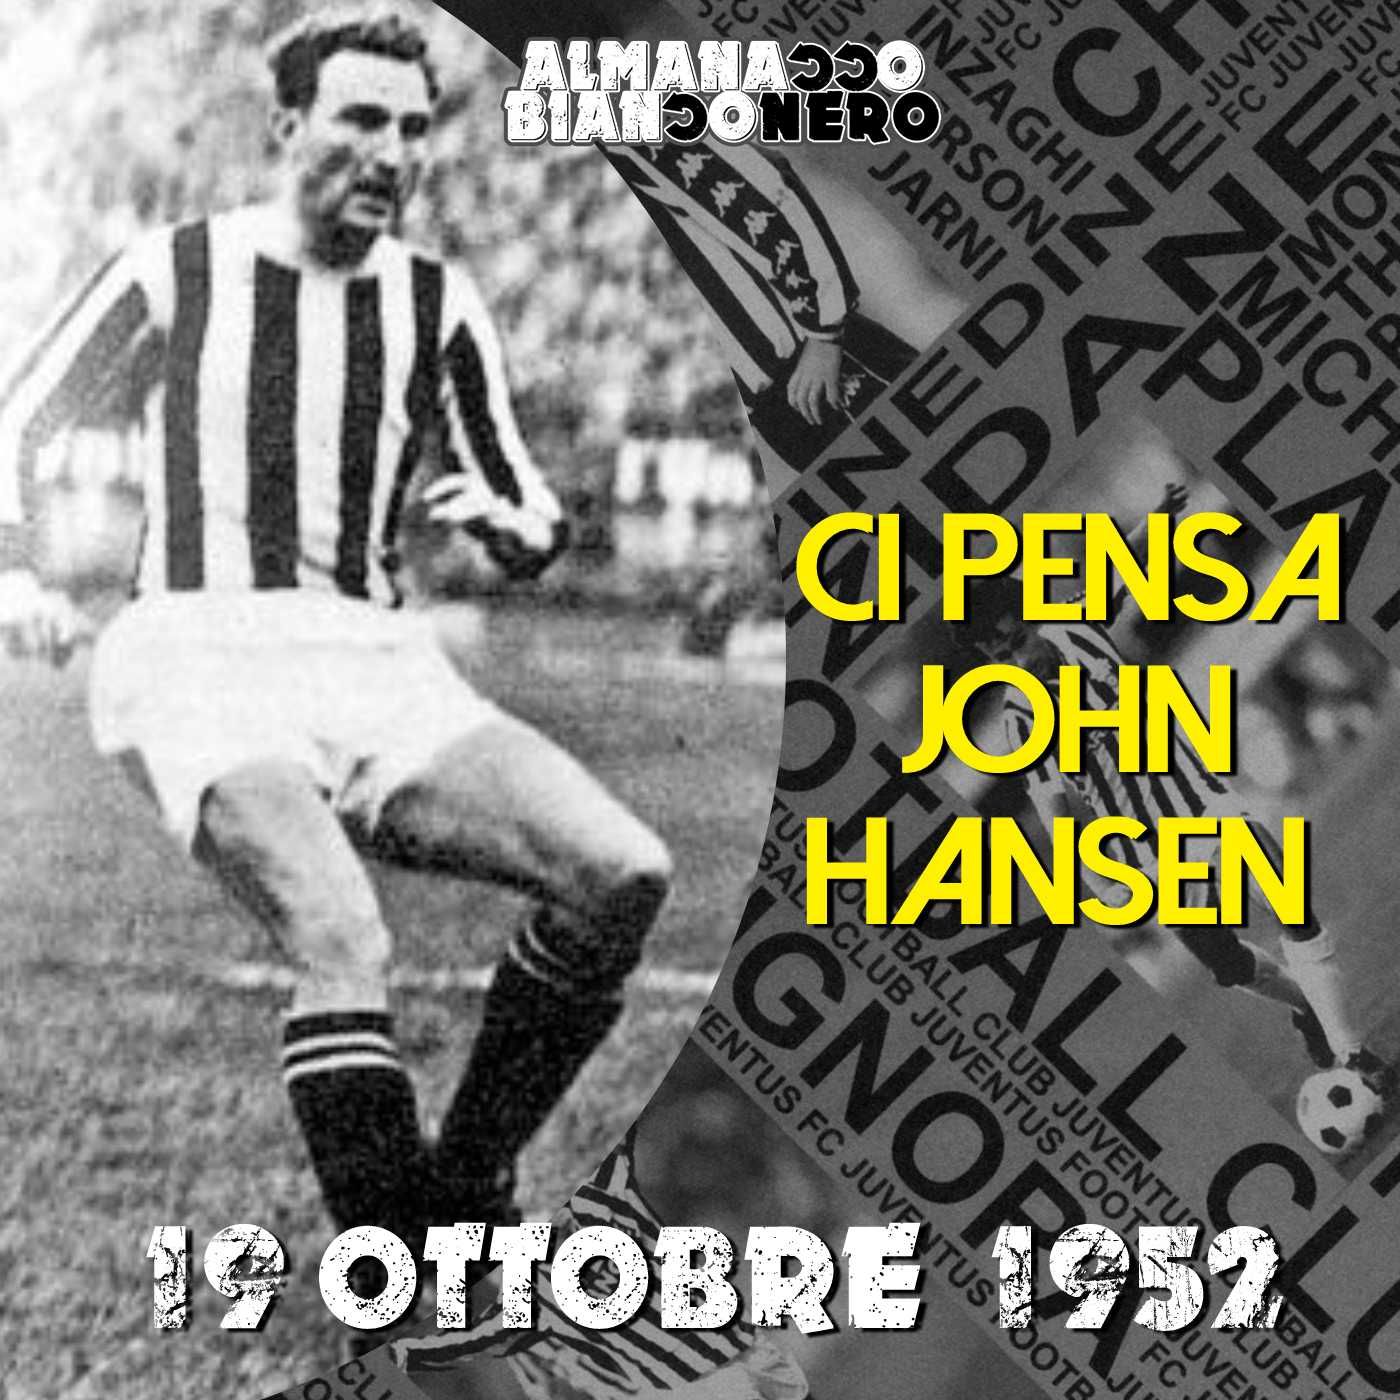 19 ottobre 1952 - Ci pensa John Hansen